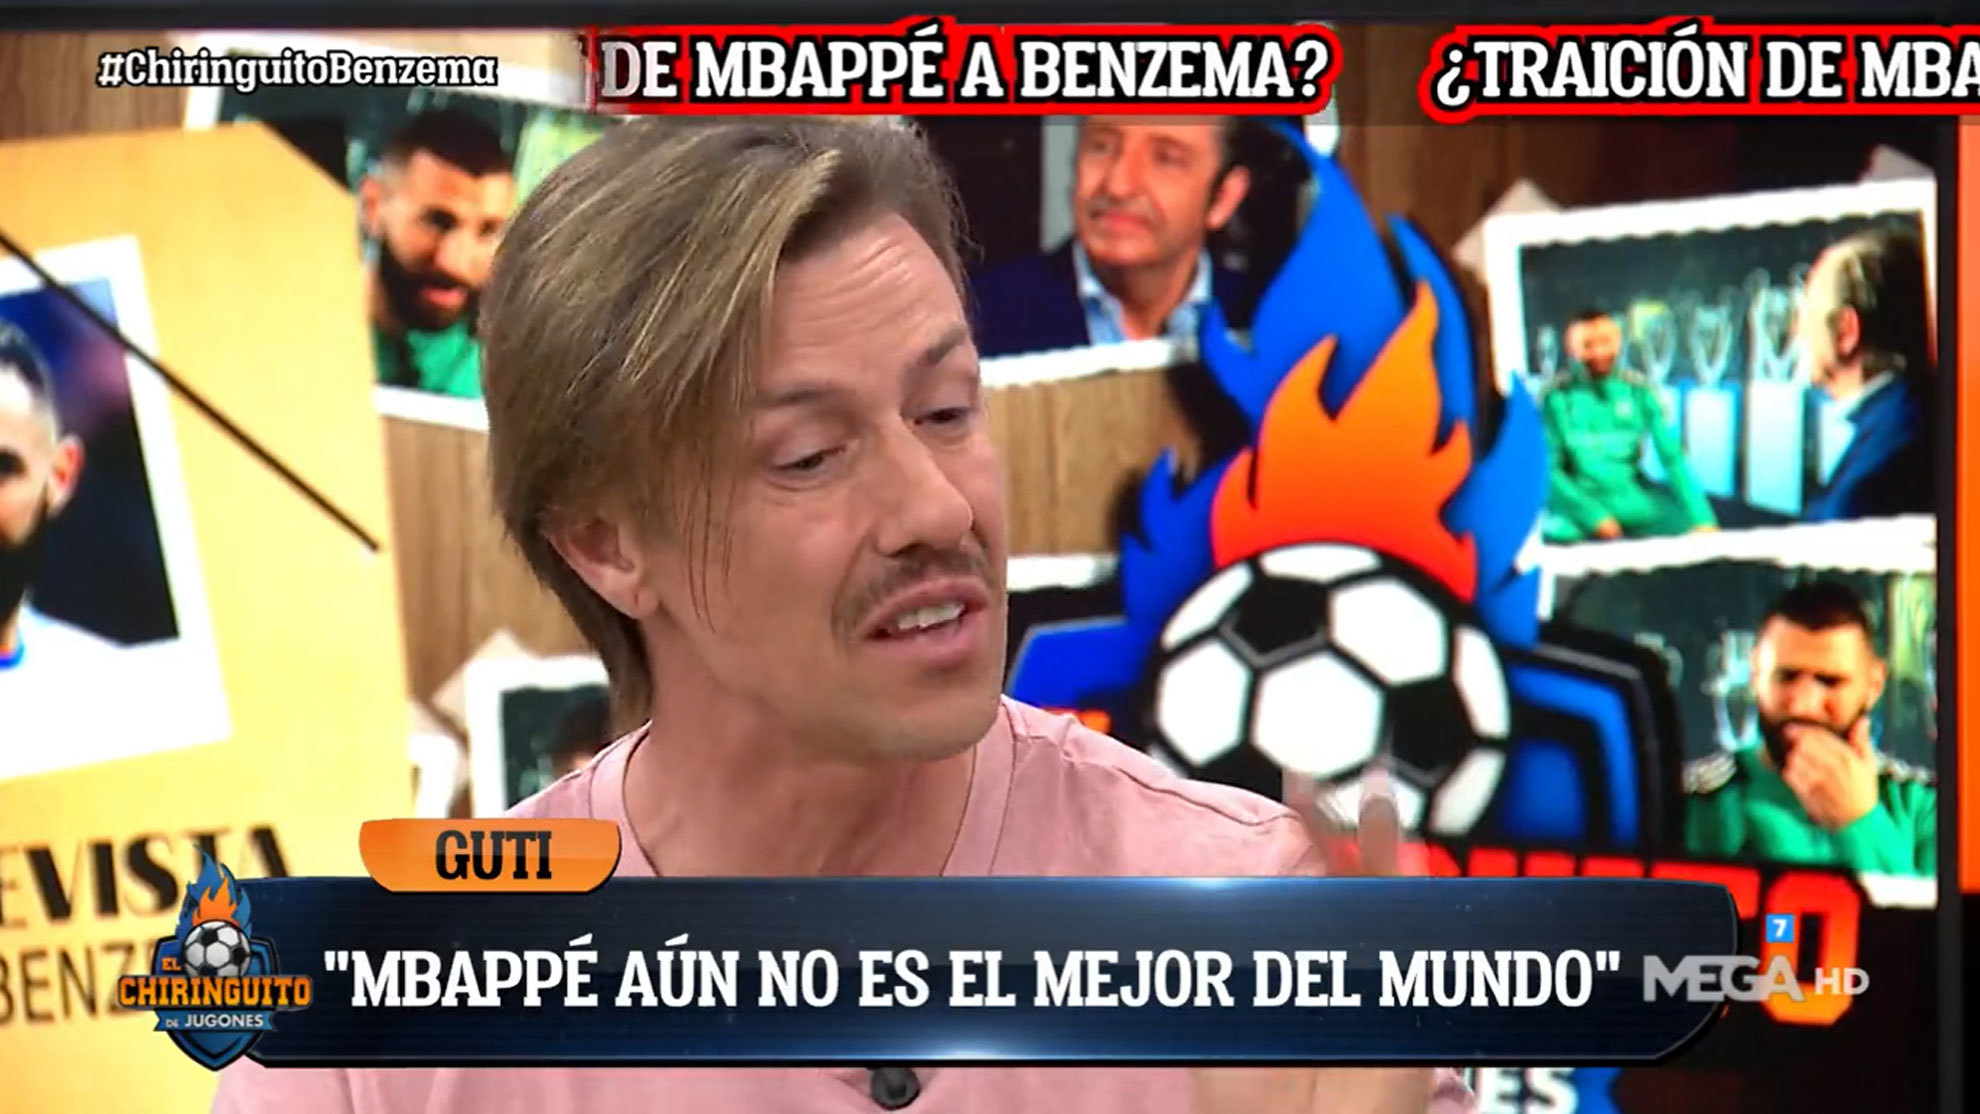 Guti: "Alguien tiene que decirle a la cara a Mbappé que no es el mejor jugador del mundo"